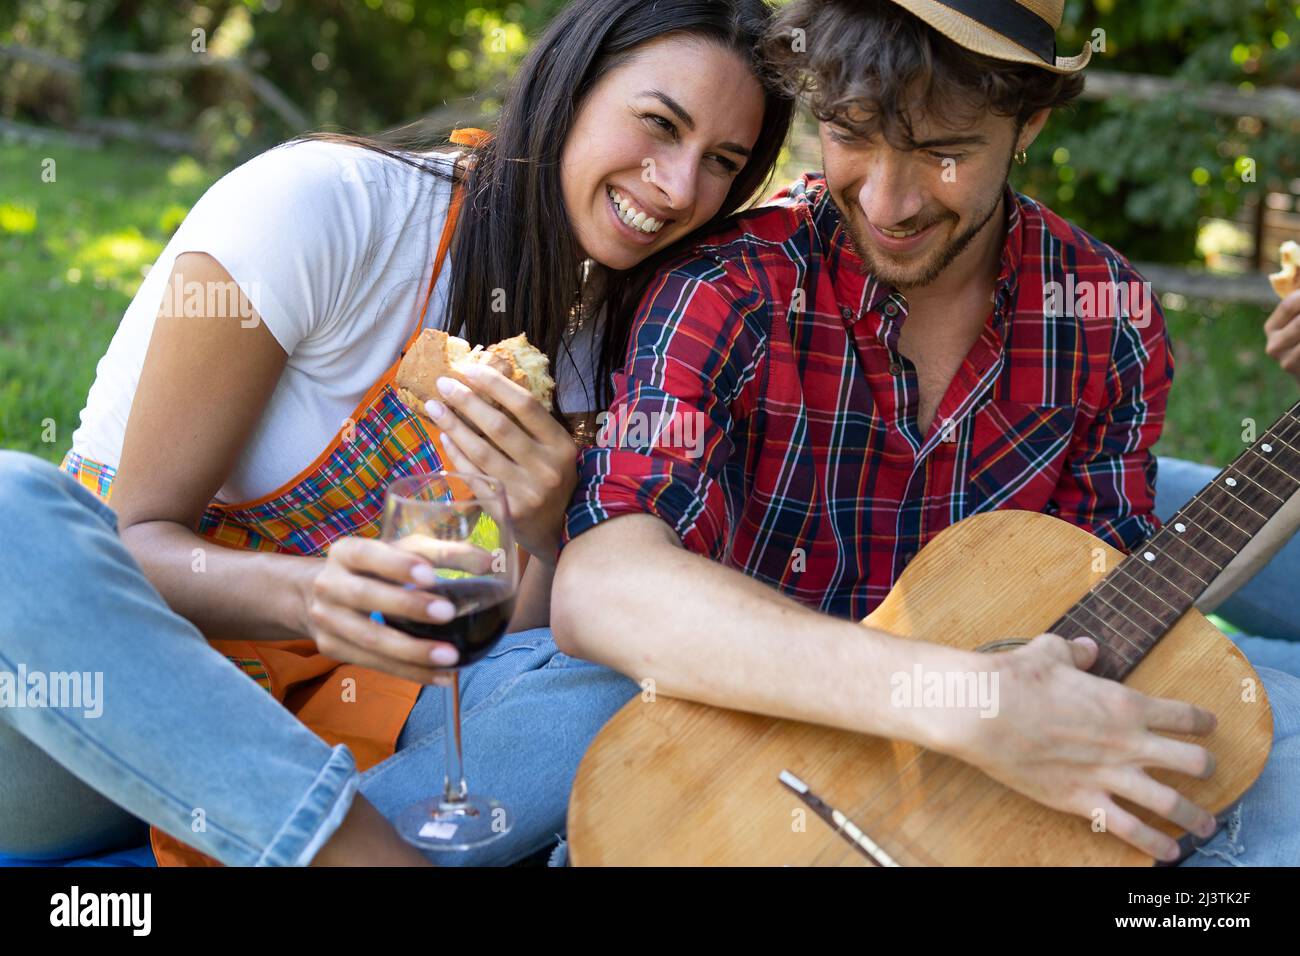 Coppia di giovani che condividono emozioni positive all'aperto divertirsi al picnic. Sta mangiando un panino mentre tiene una chitarra acustica Foto Stock